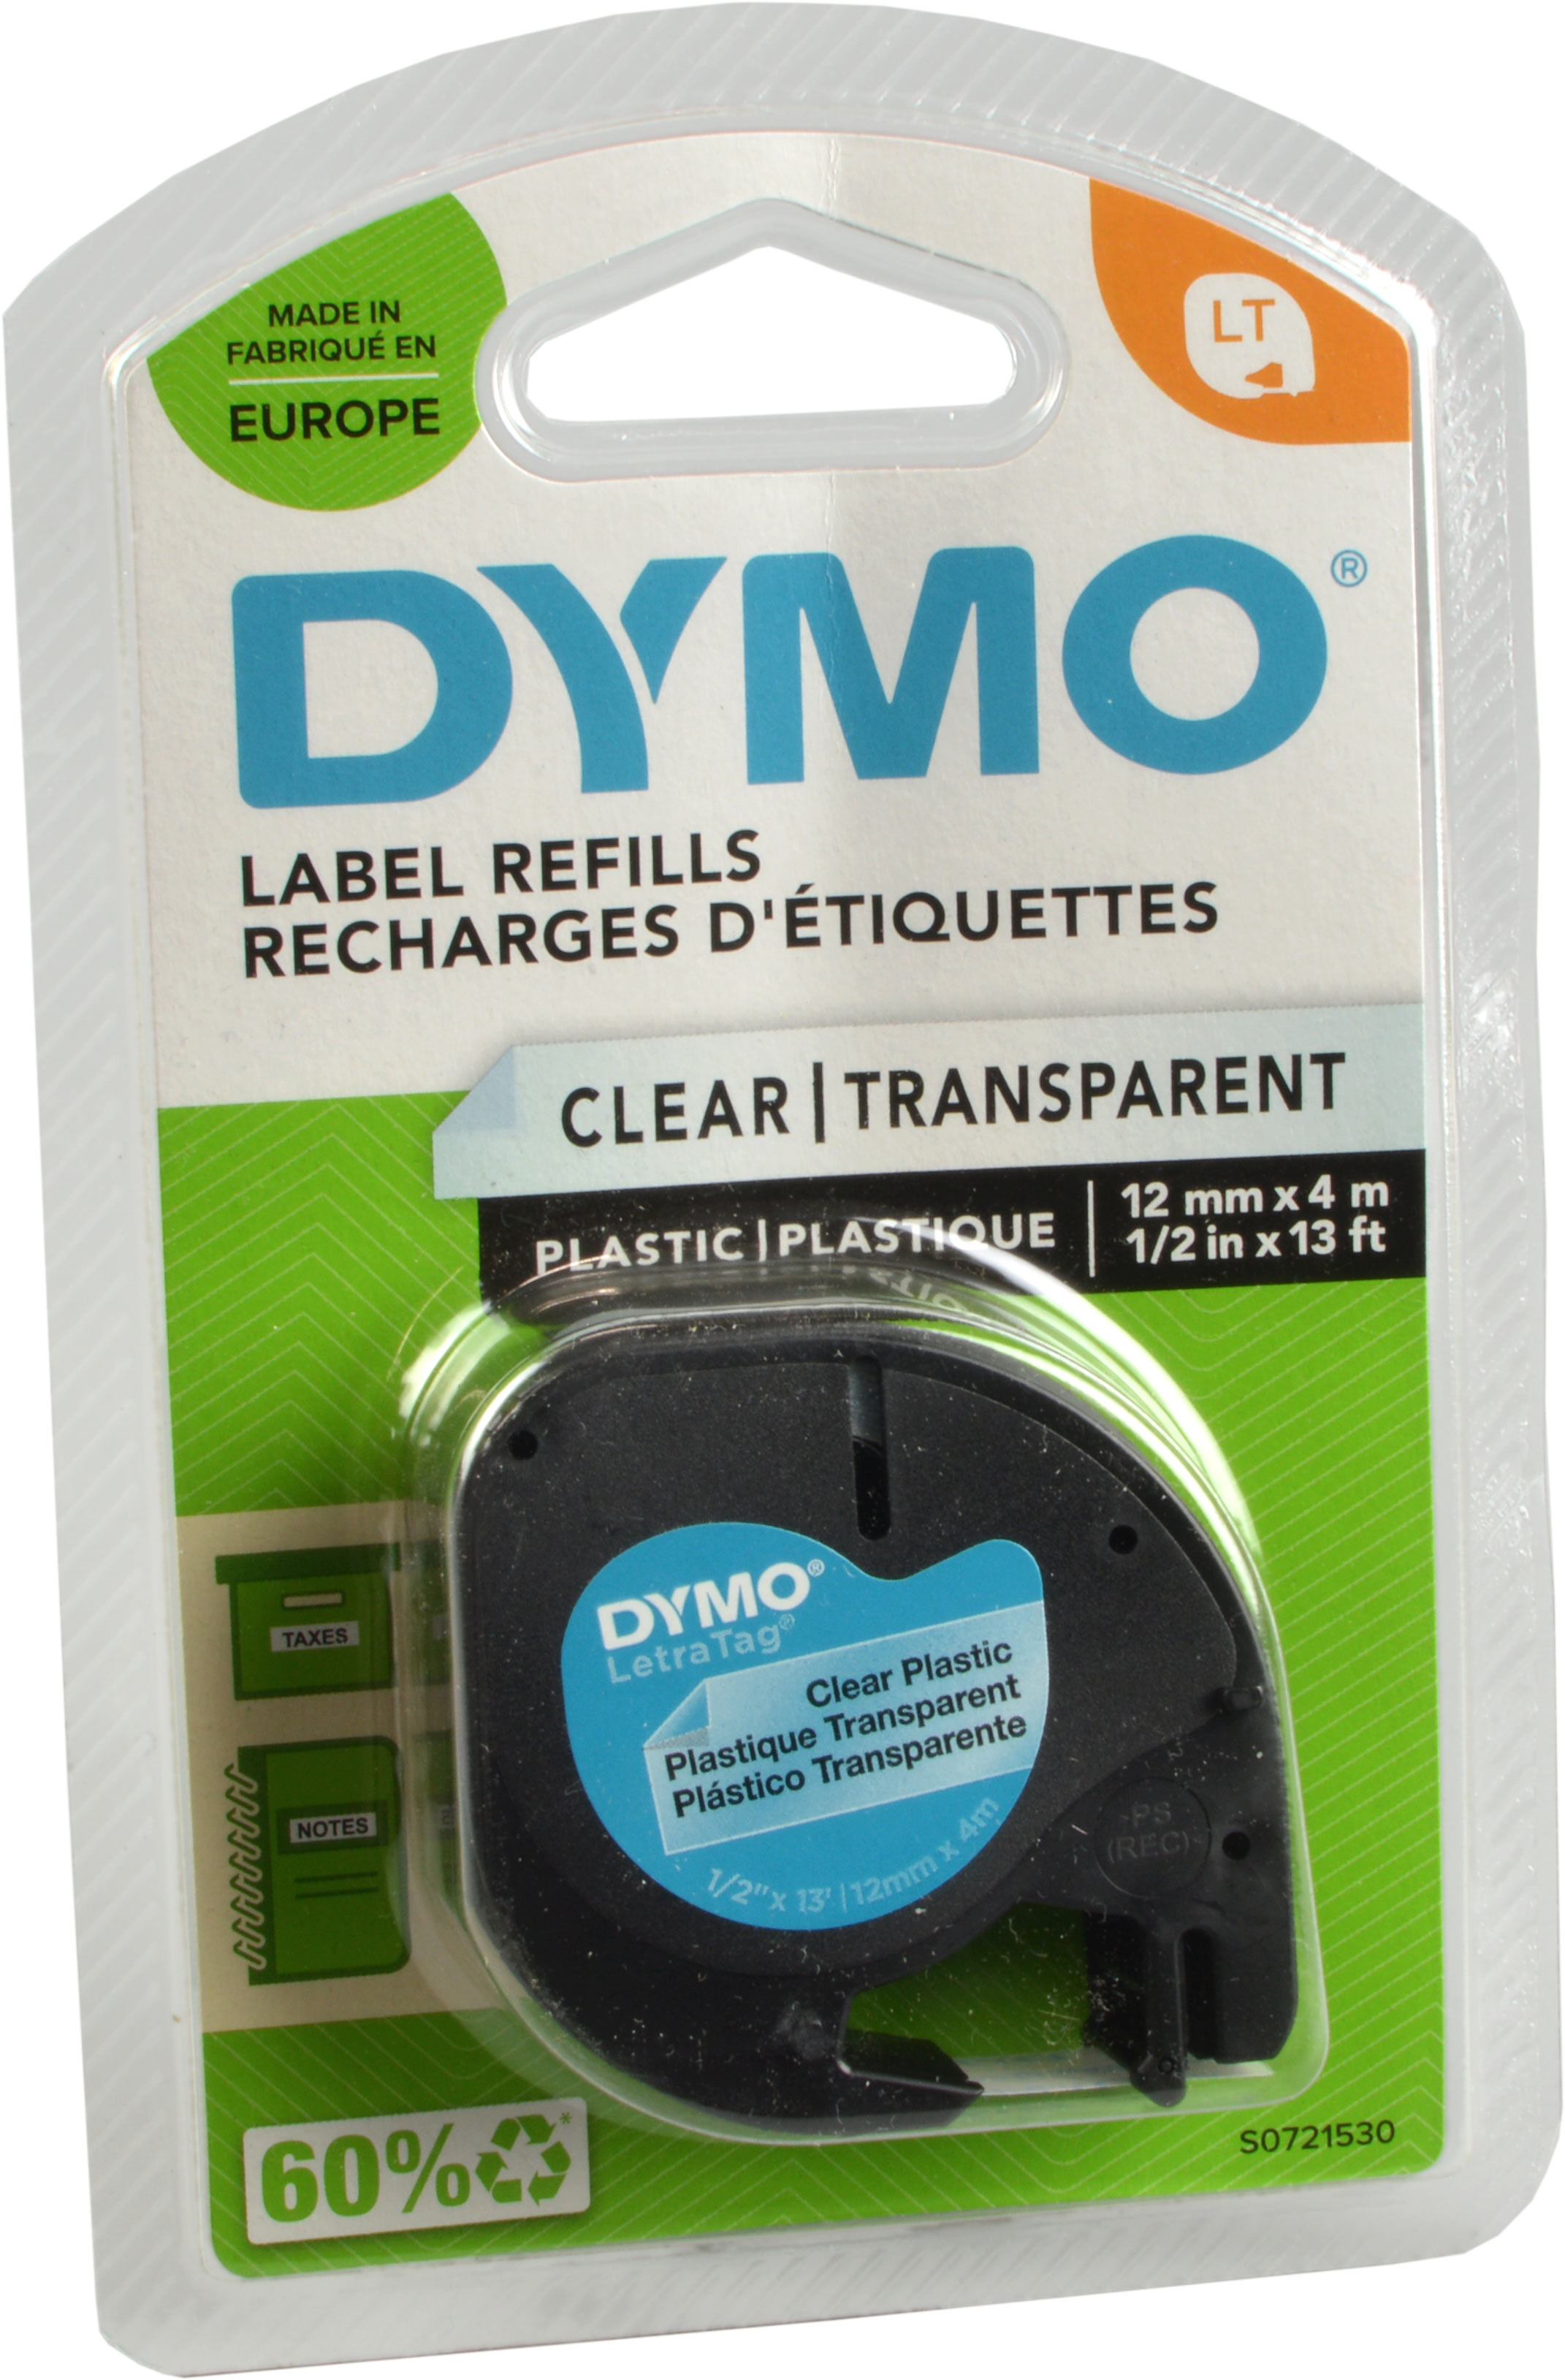 Dymo Originalband 16951  schwarz auf klar  12mm x 4m  Nylon flexibel